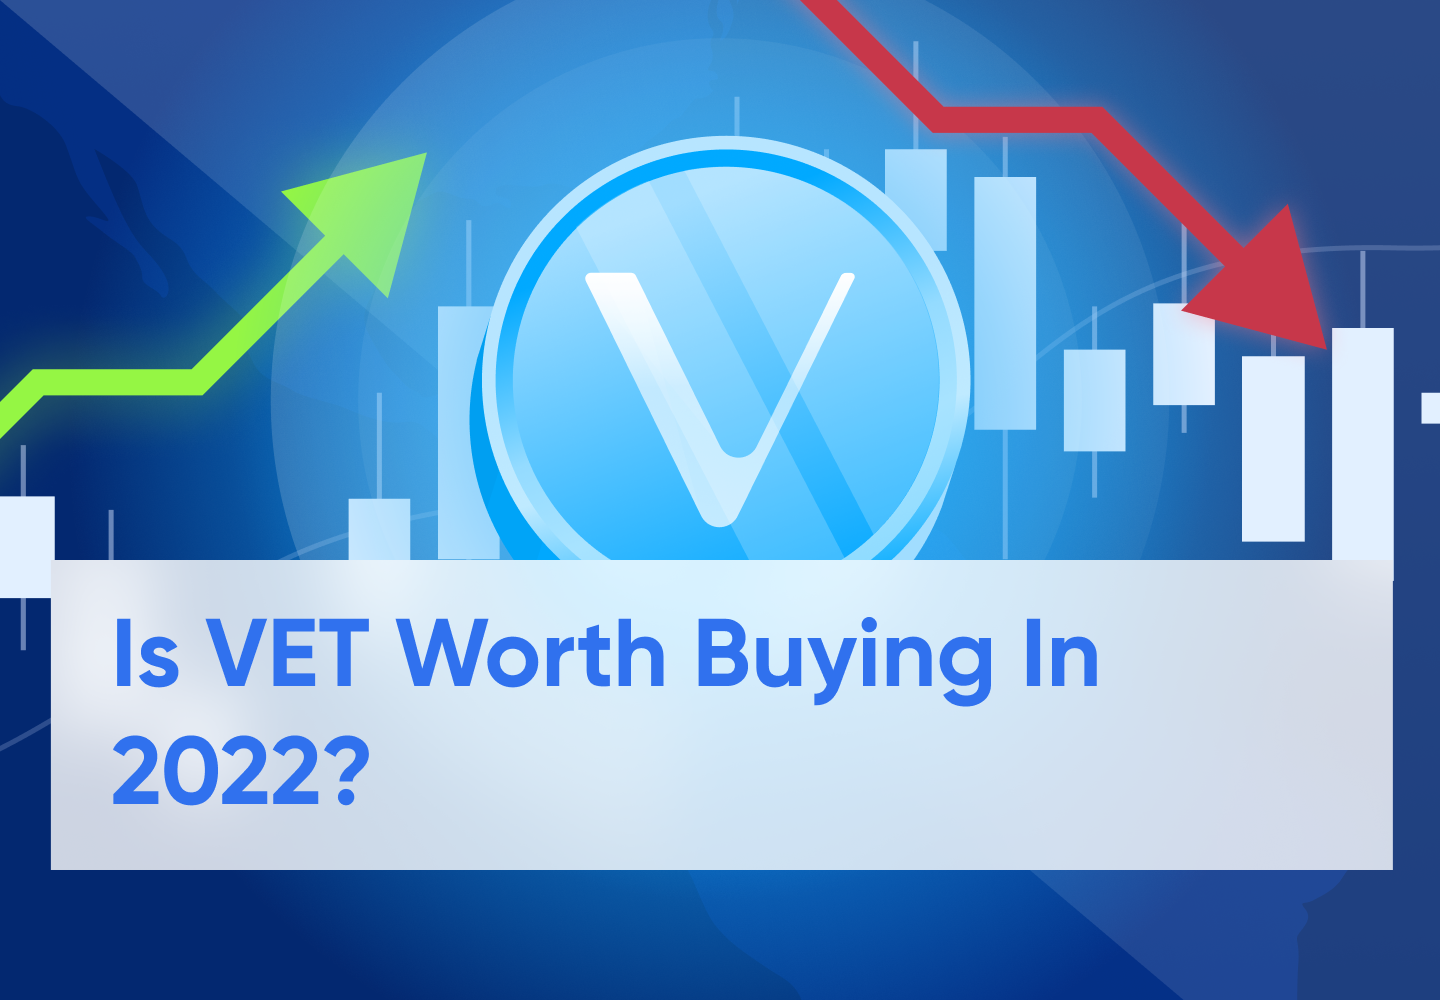 Vechain (VET) Price Prediction 2022 - 2030